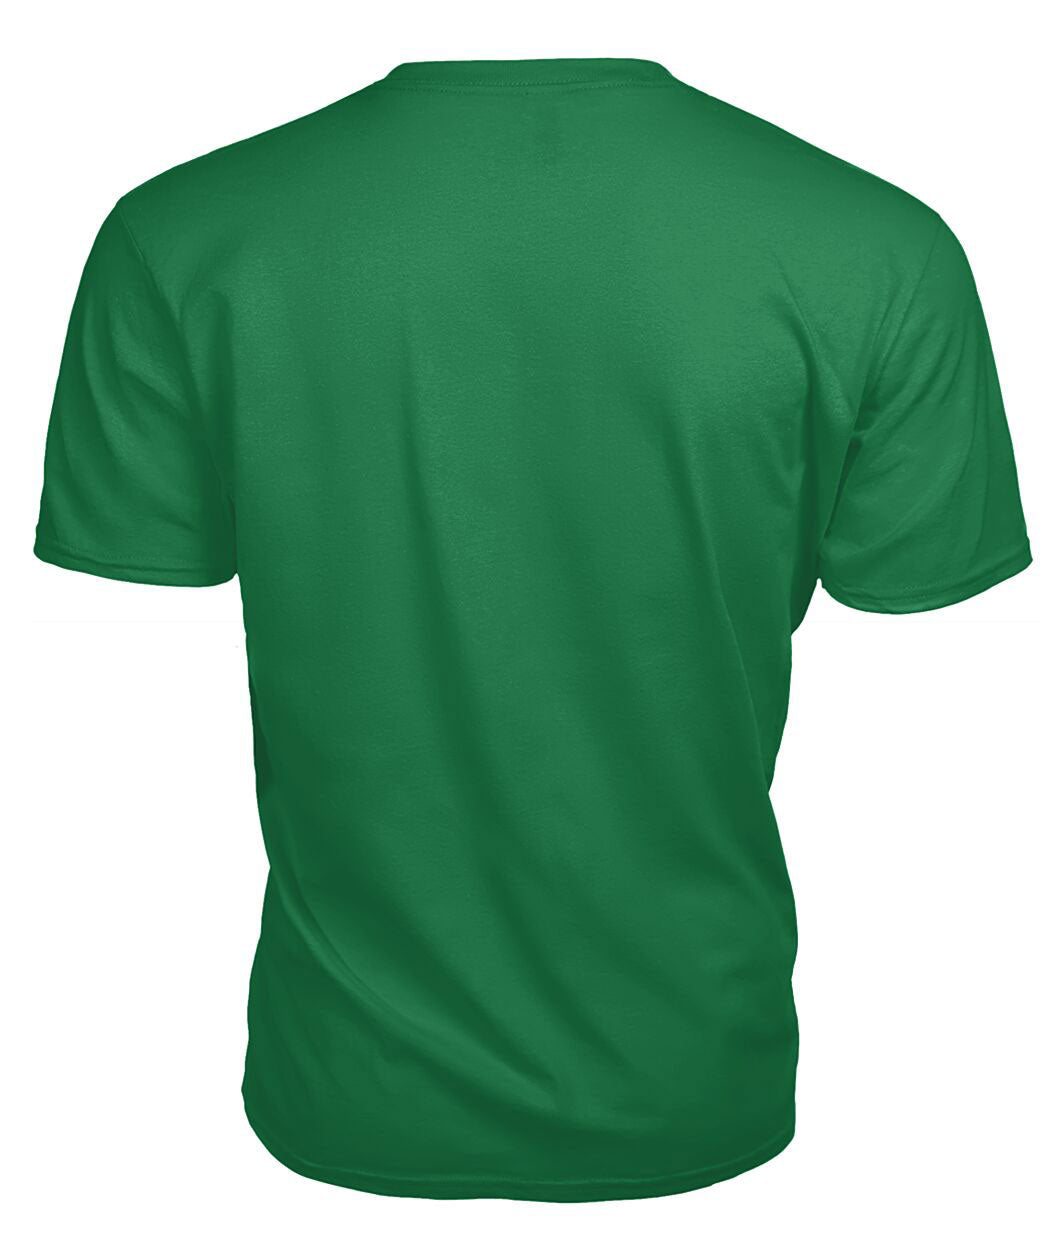 Kennedy Modern Tartan Crest 2D T-shirt - Blood Runs Through My Veins Style